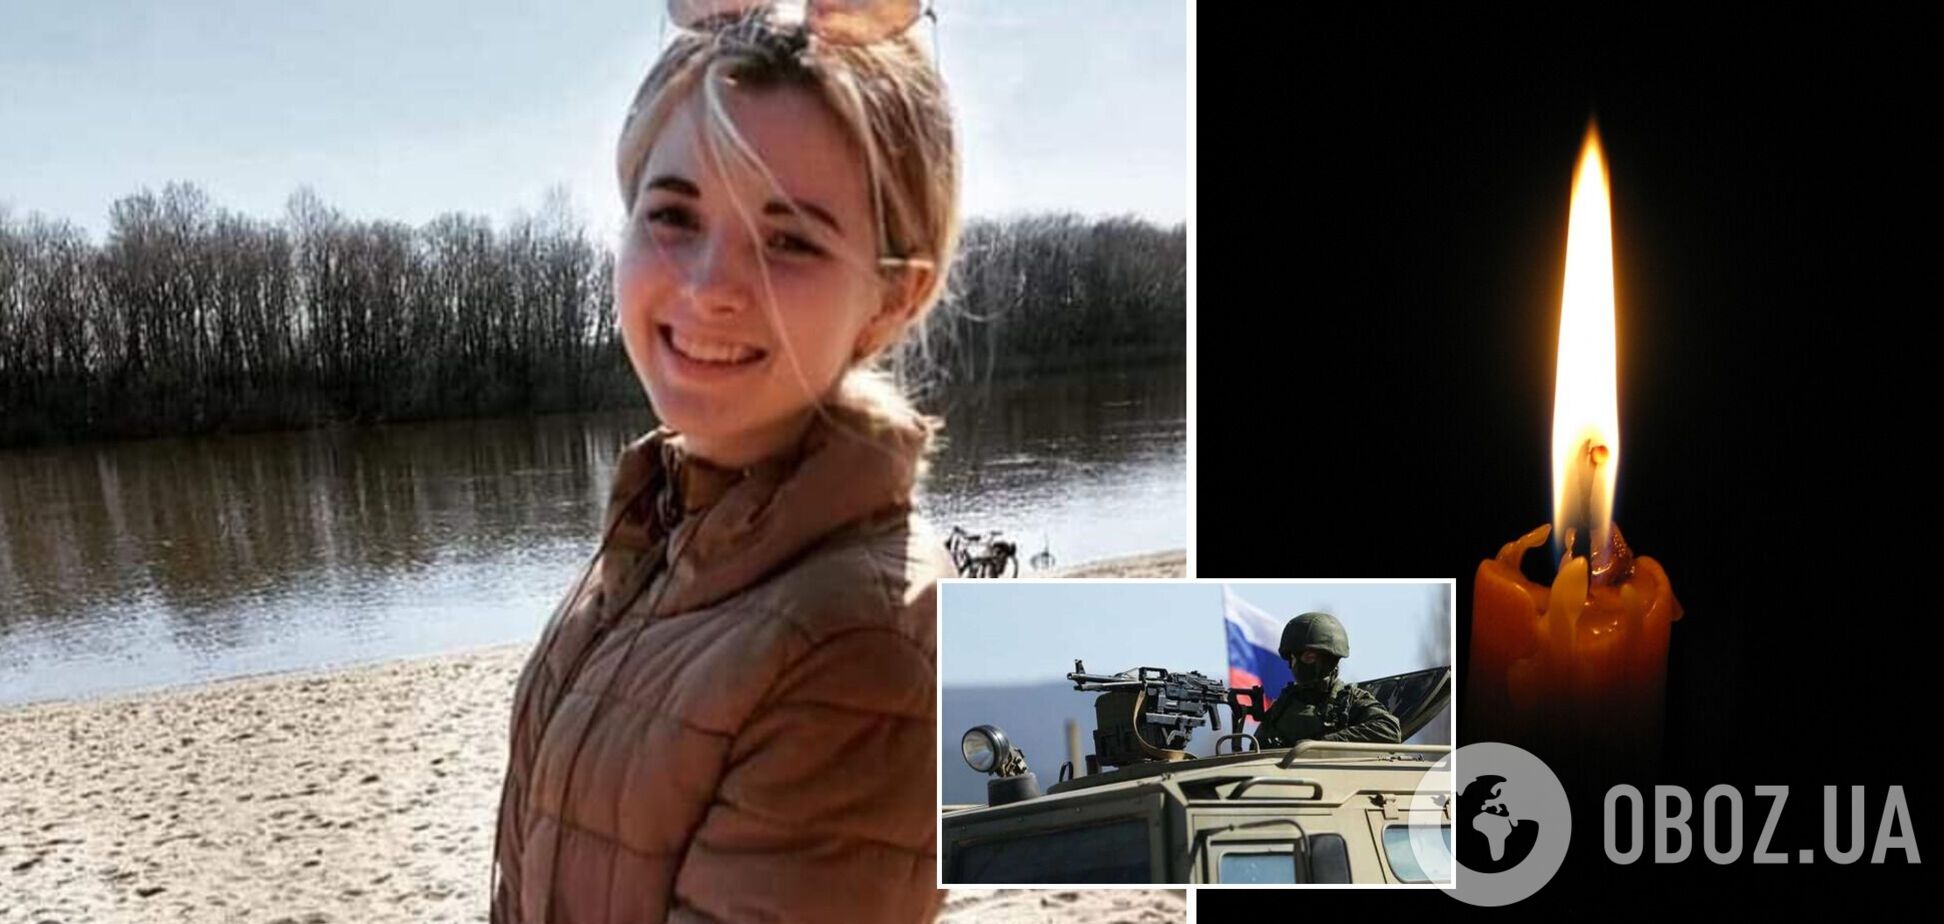 Оккупанты убили студентку НПУ им. М. Драгоманова: девушка везла гуманитарную помощь в Чернигов. Фото